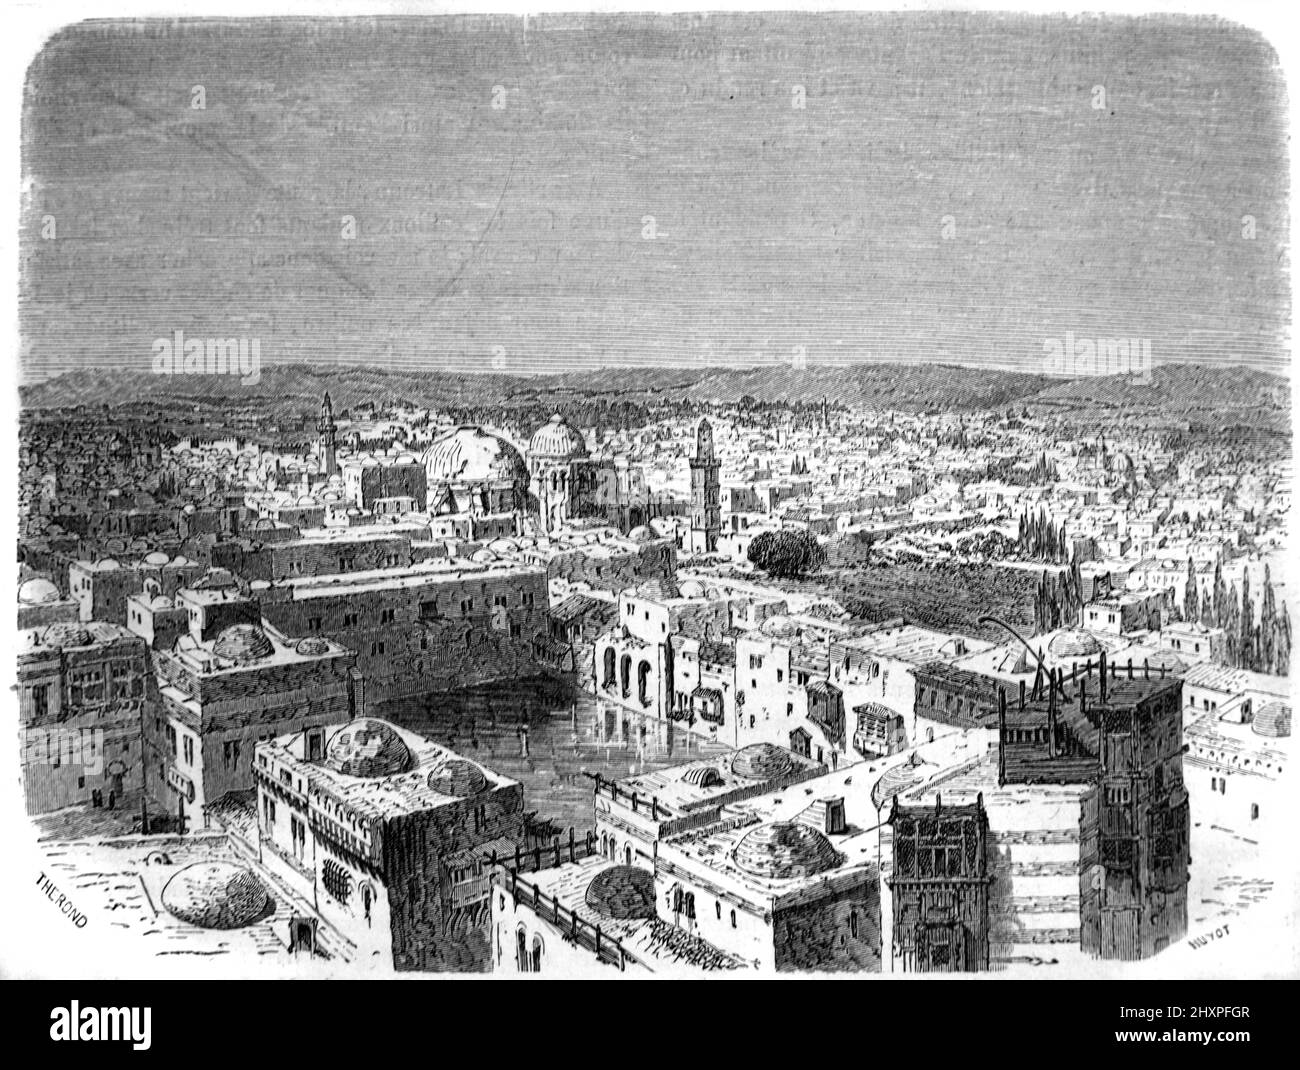 Vue de bonne heure, vue historique ou vue panoramique sur les toits et la vieille ville de Jérusalem. Illustration ancienne ou gravure 1860. Banque D'Images